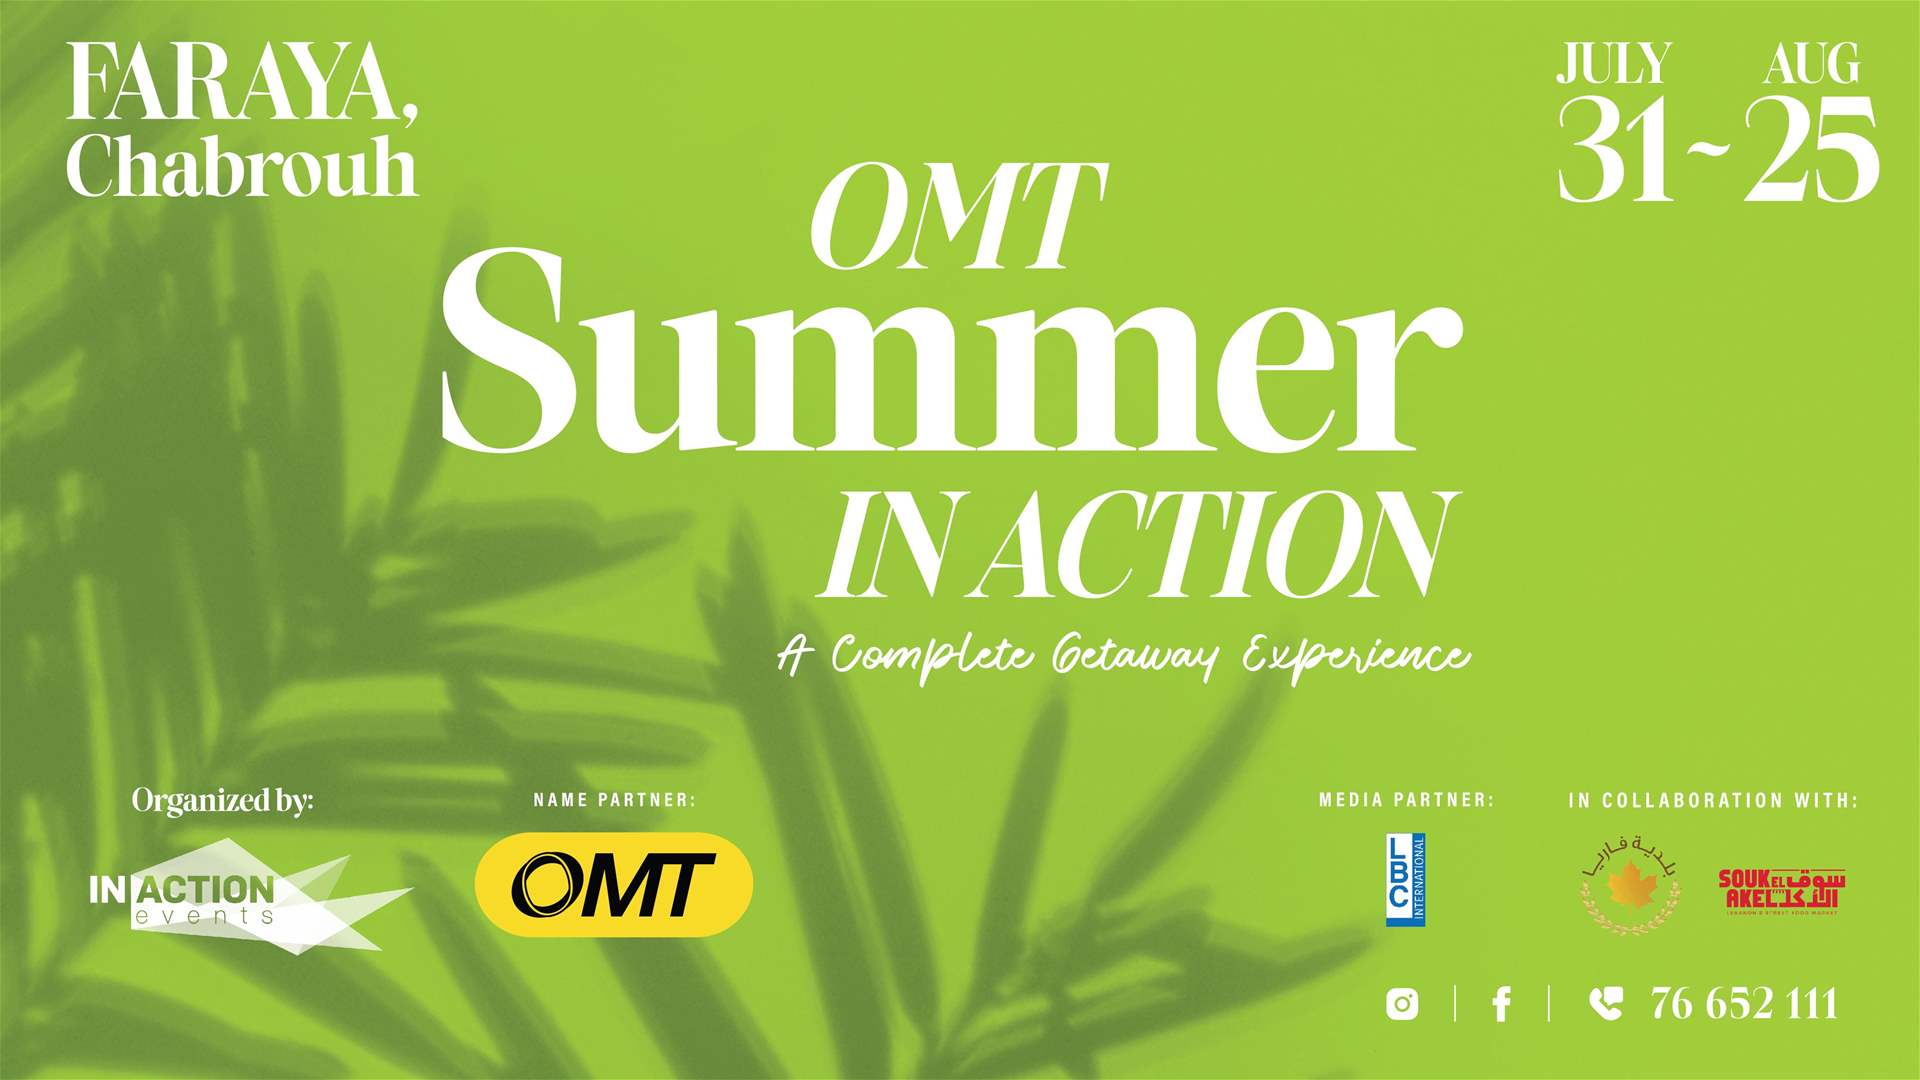 أجواء صيفيّة ترفيهية مميّزة بانتظاركم مع OMT Summer In Action في فاريا _ شبروح!